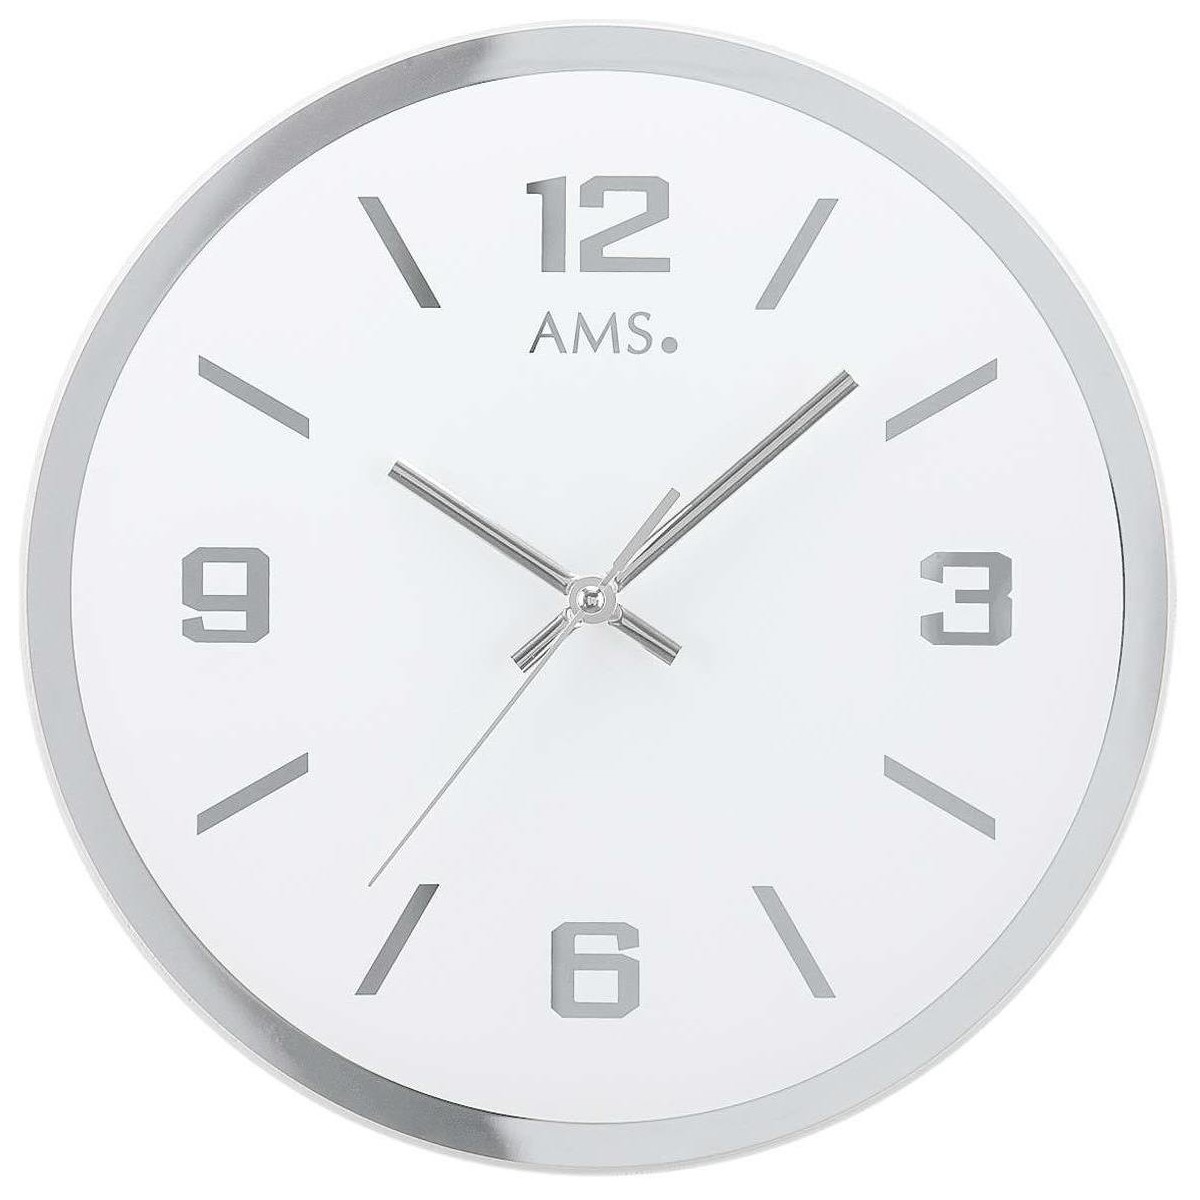 Jack & Jones Horloges Ams 9322, Quartz, Blanche, Analogique, Modern Blanc